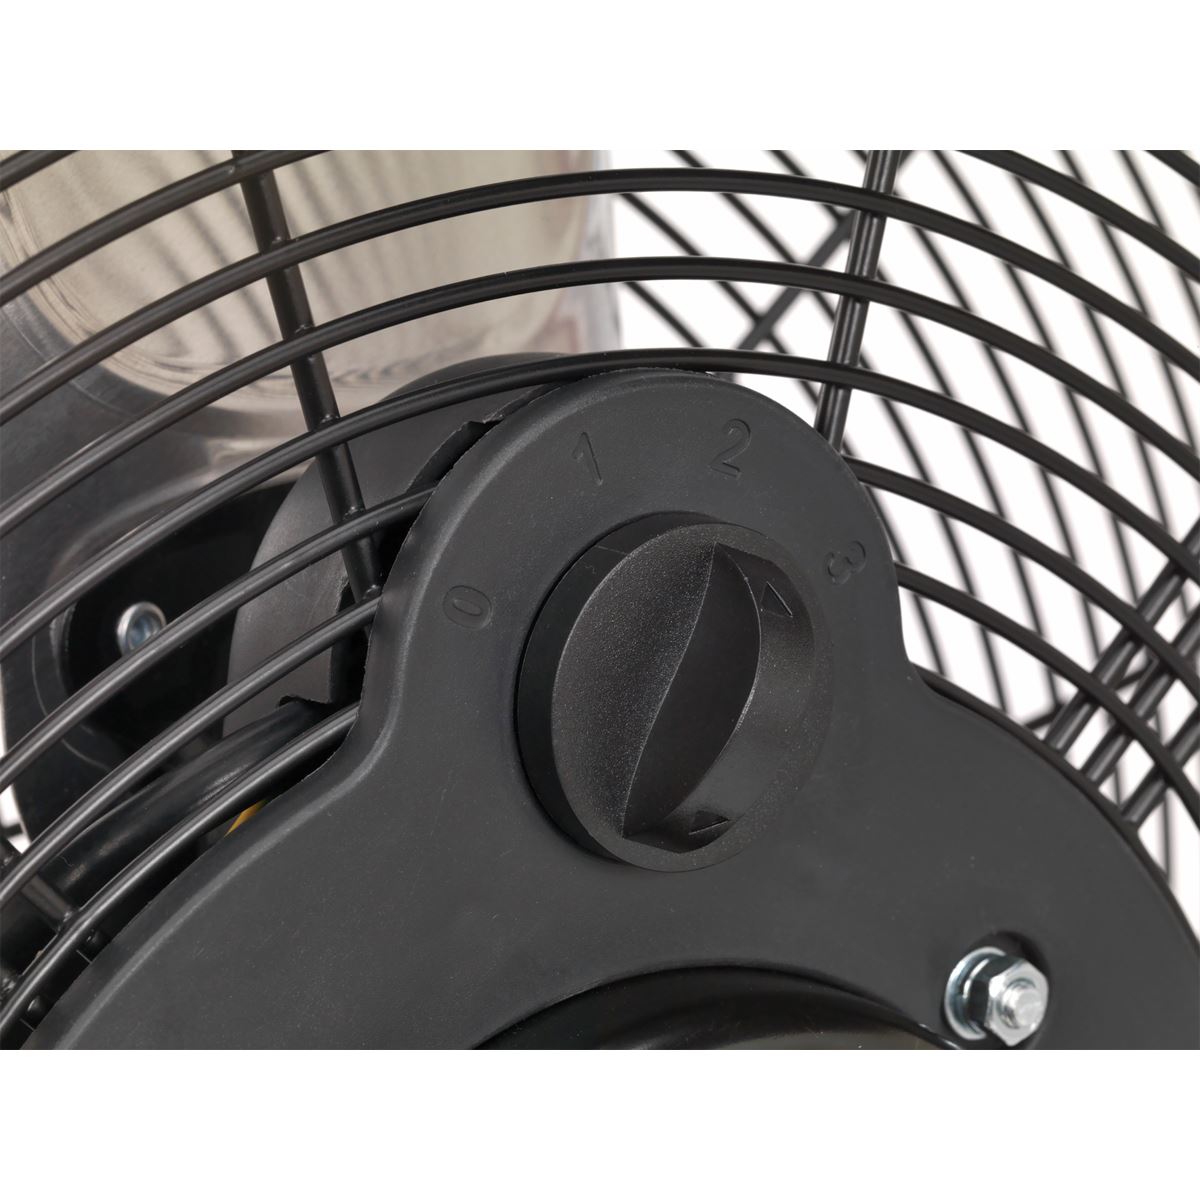 Sealey Industrial High Velocity Floor Fan 18" 230V